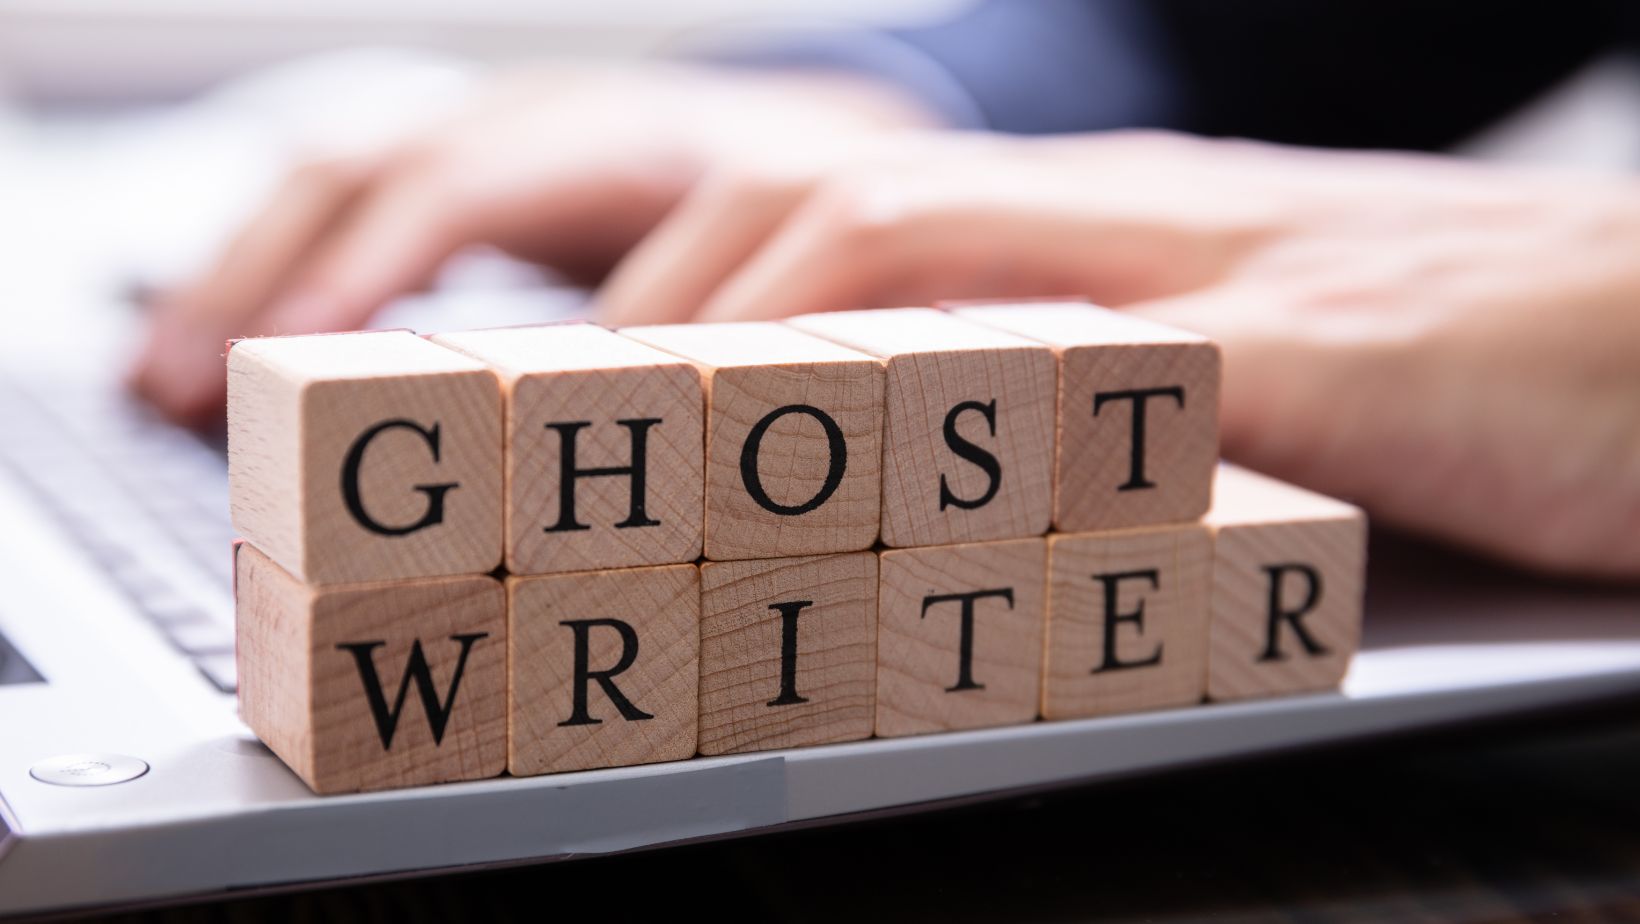 Scopri di più sull'articolo Ghostwriter: chi è, cosa fa e perché contattarlo